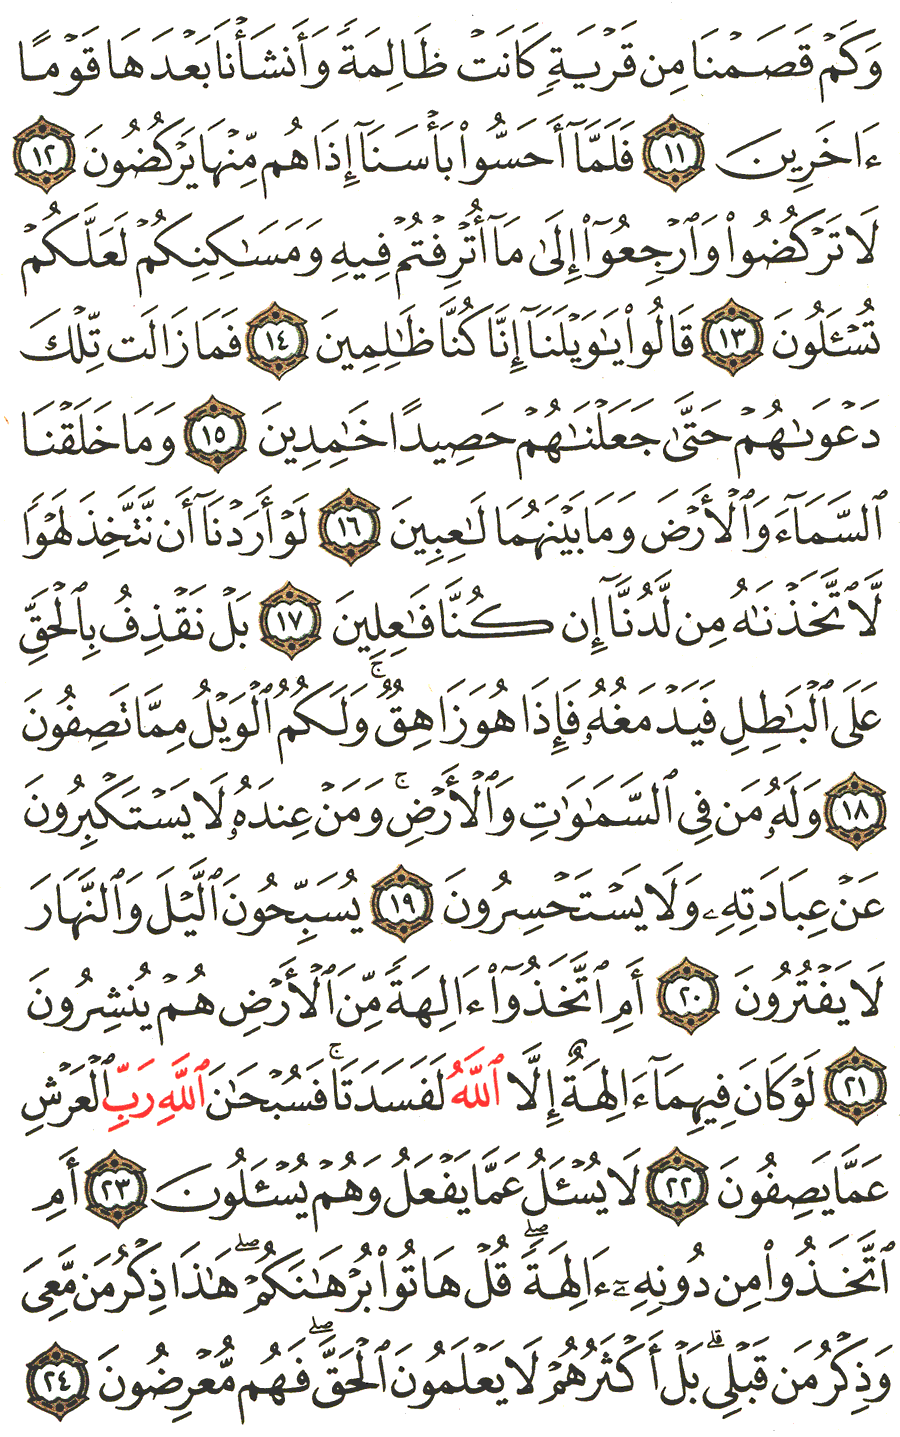 الصفحة رقم 323  من القرآن الكريم مكتوبة من المصحف